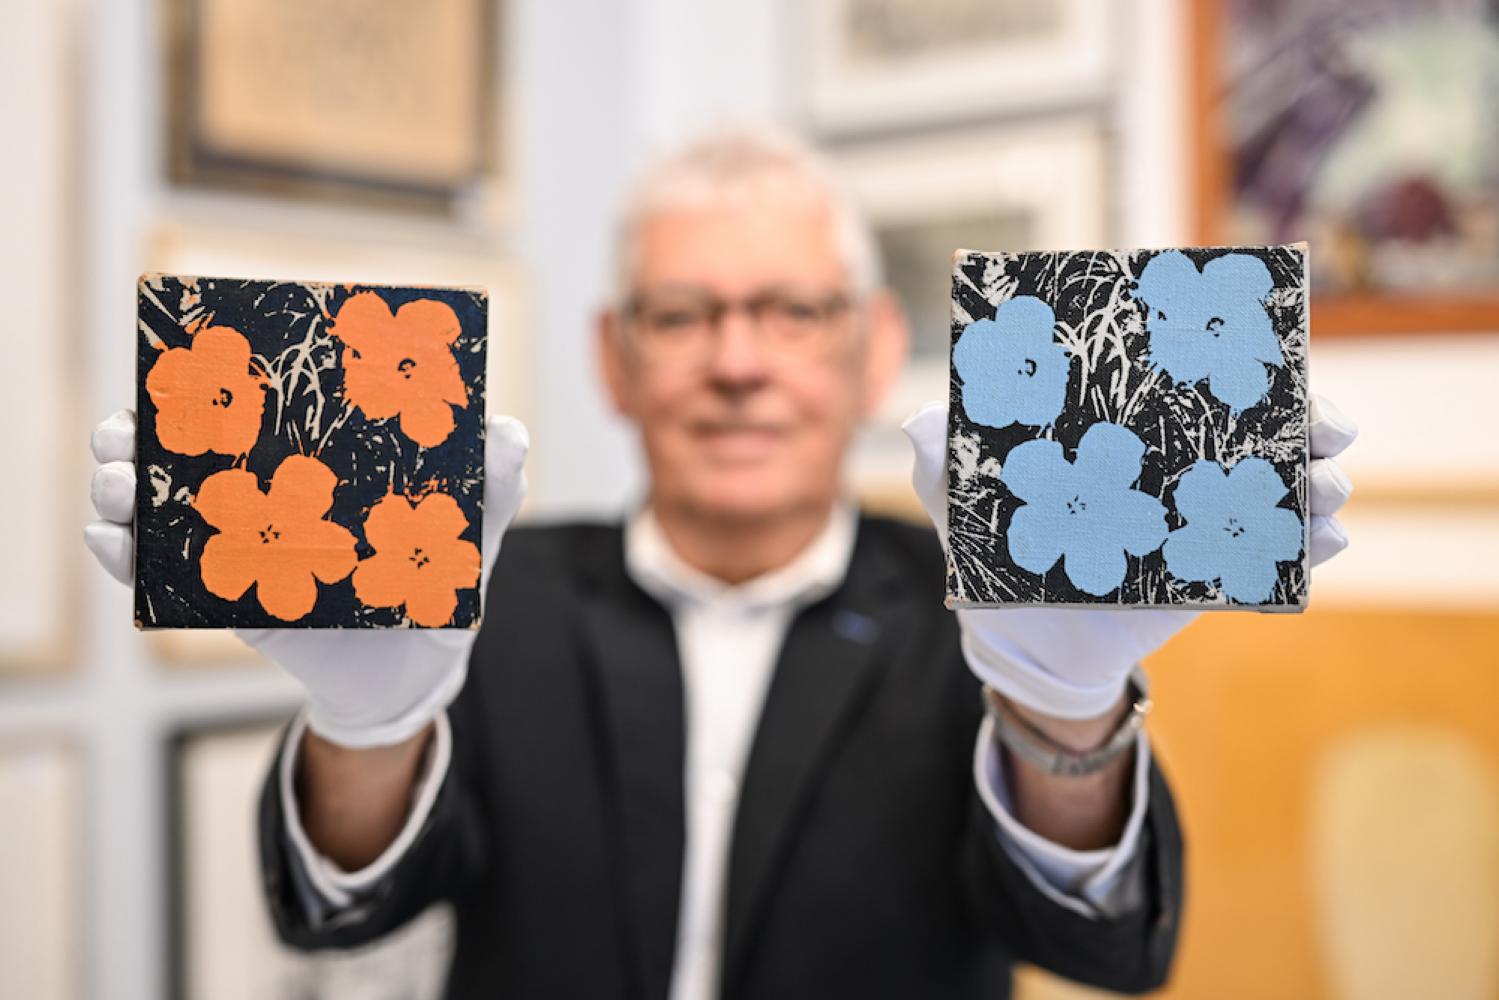 Udo Geble von Auktionshaus Geble hält zwei Warhol-Bilder mit dem Namen "Flowers" in den Händen